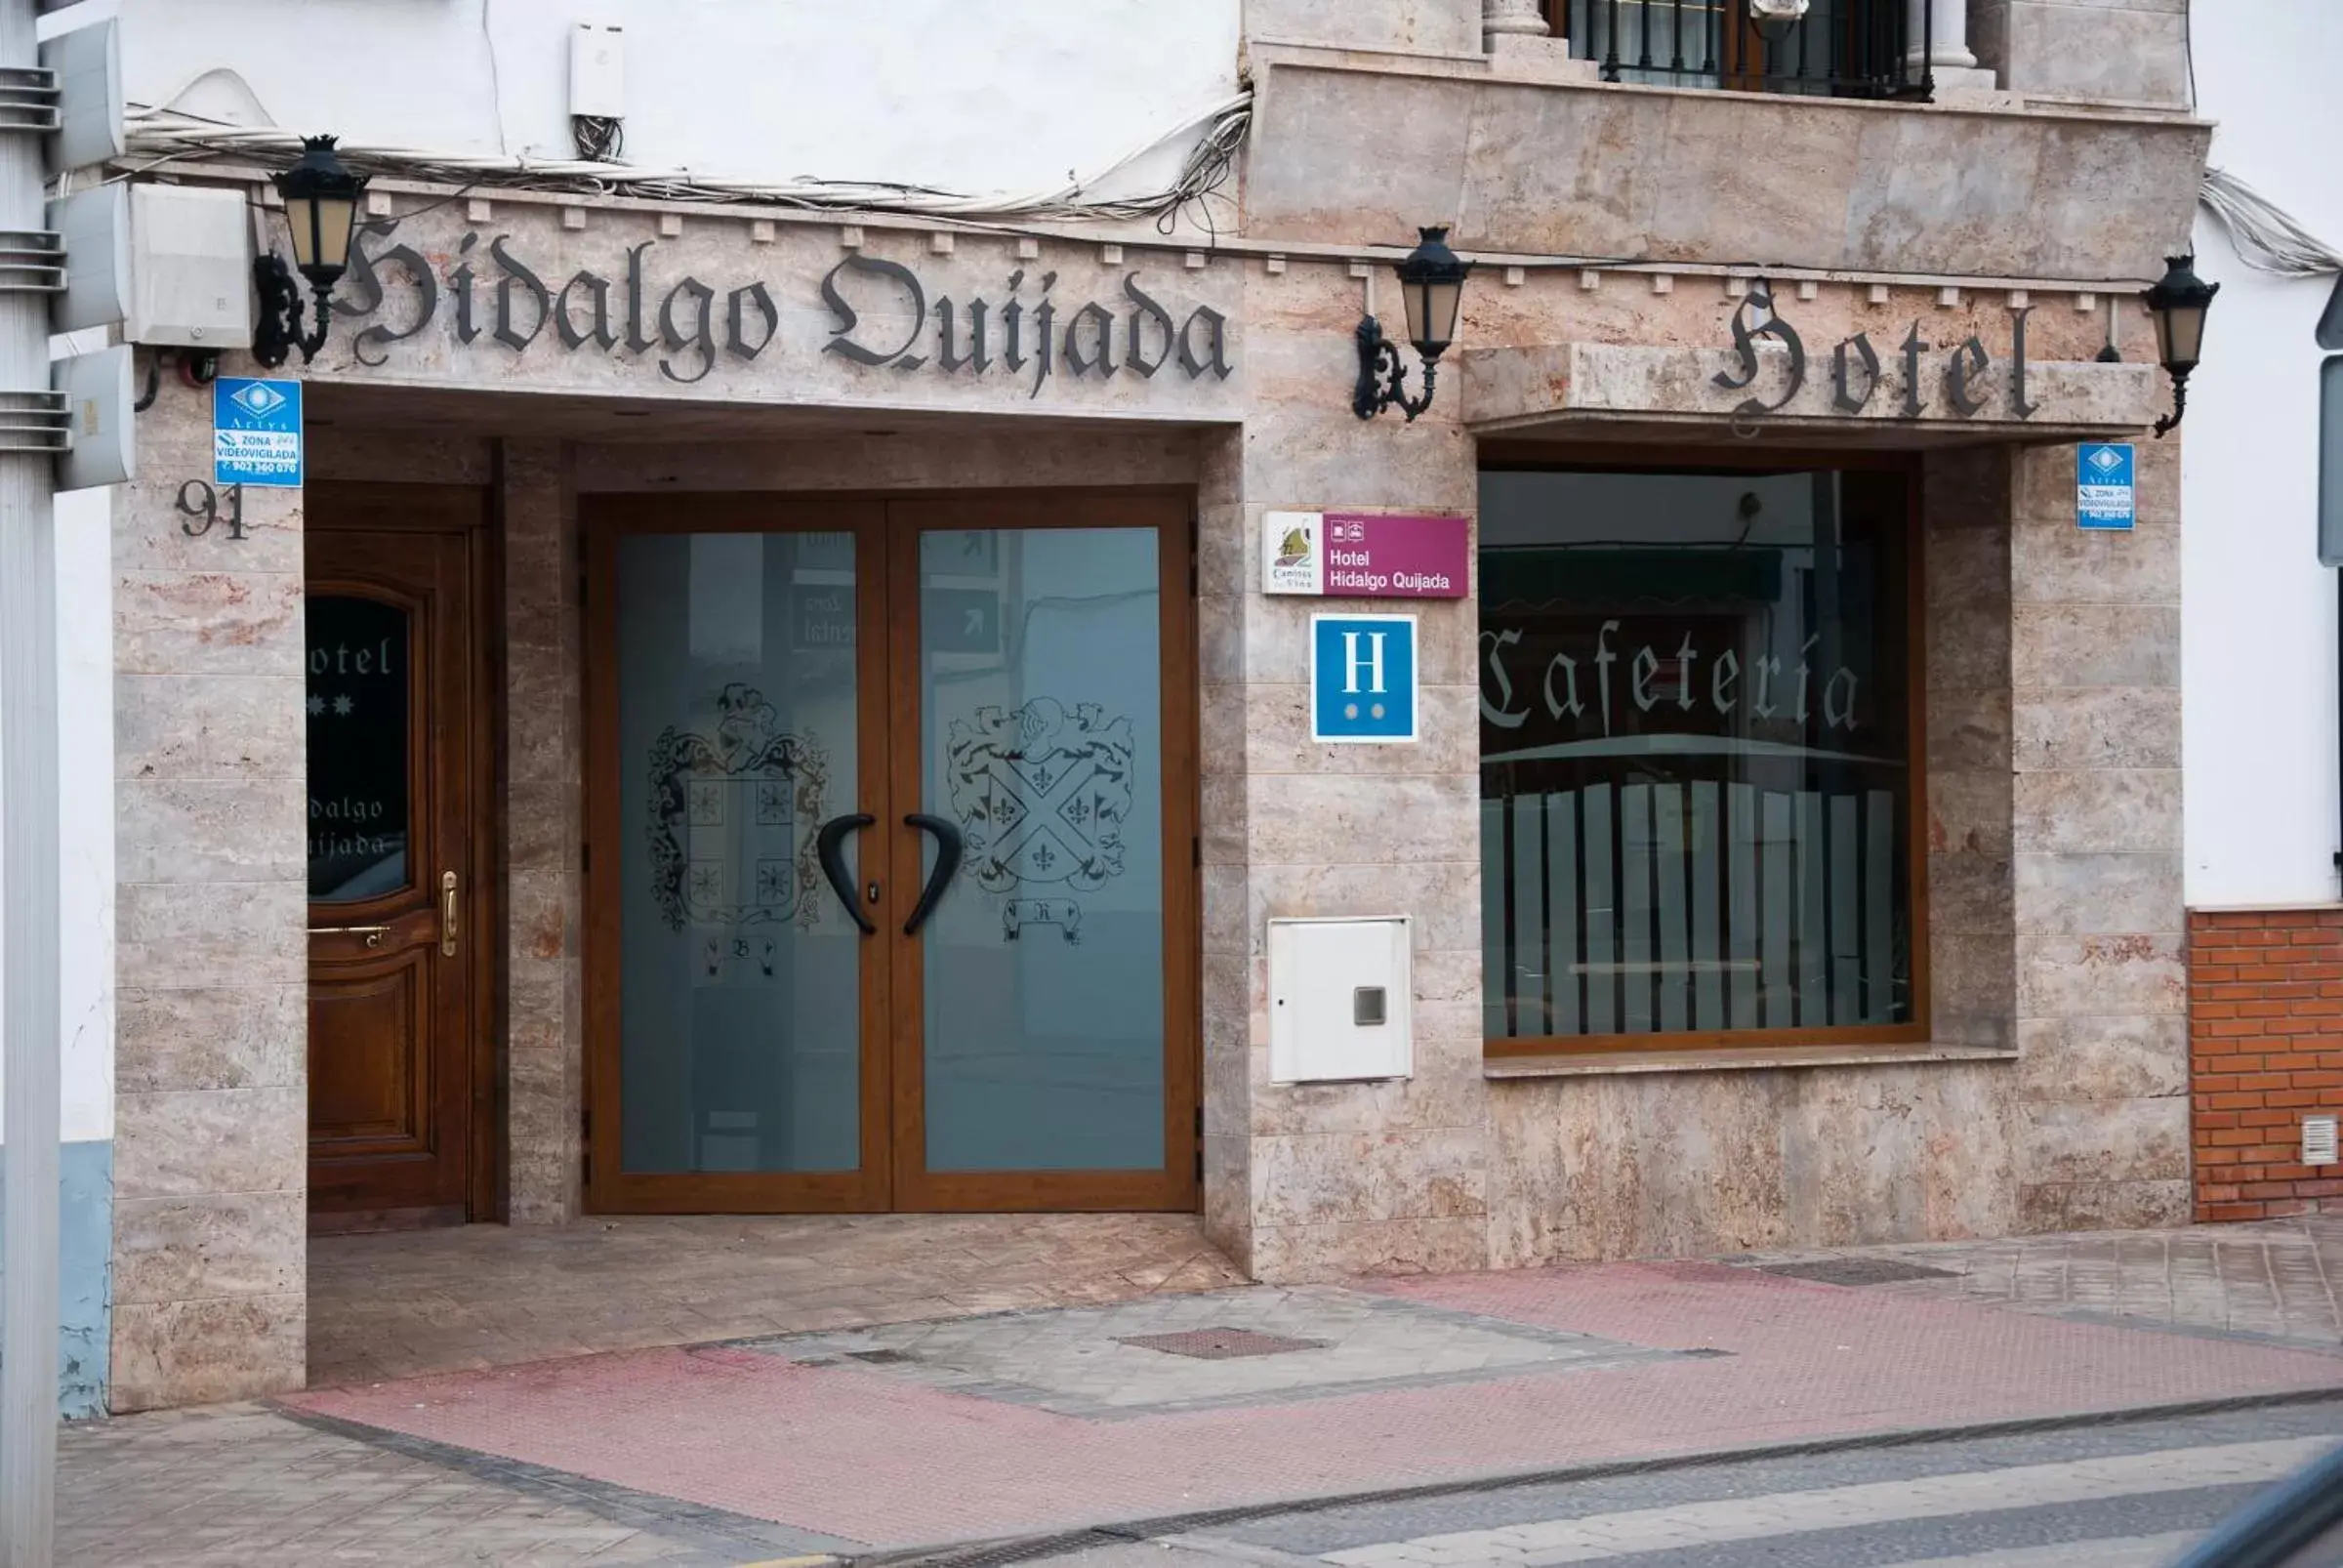 Facade/entrance in Hotel Hidalgo Quijada